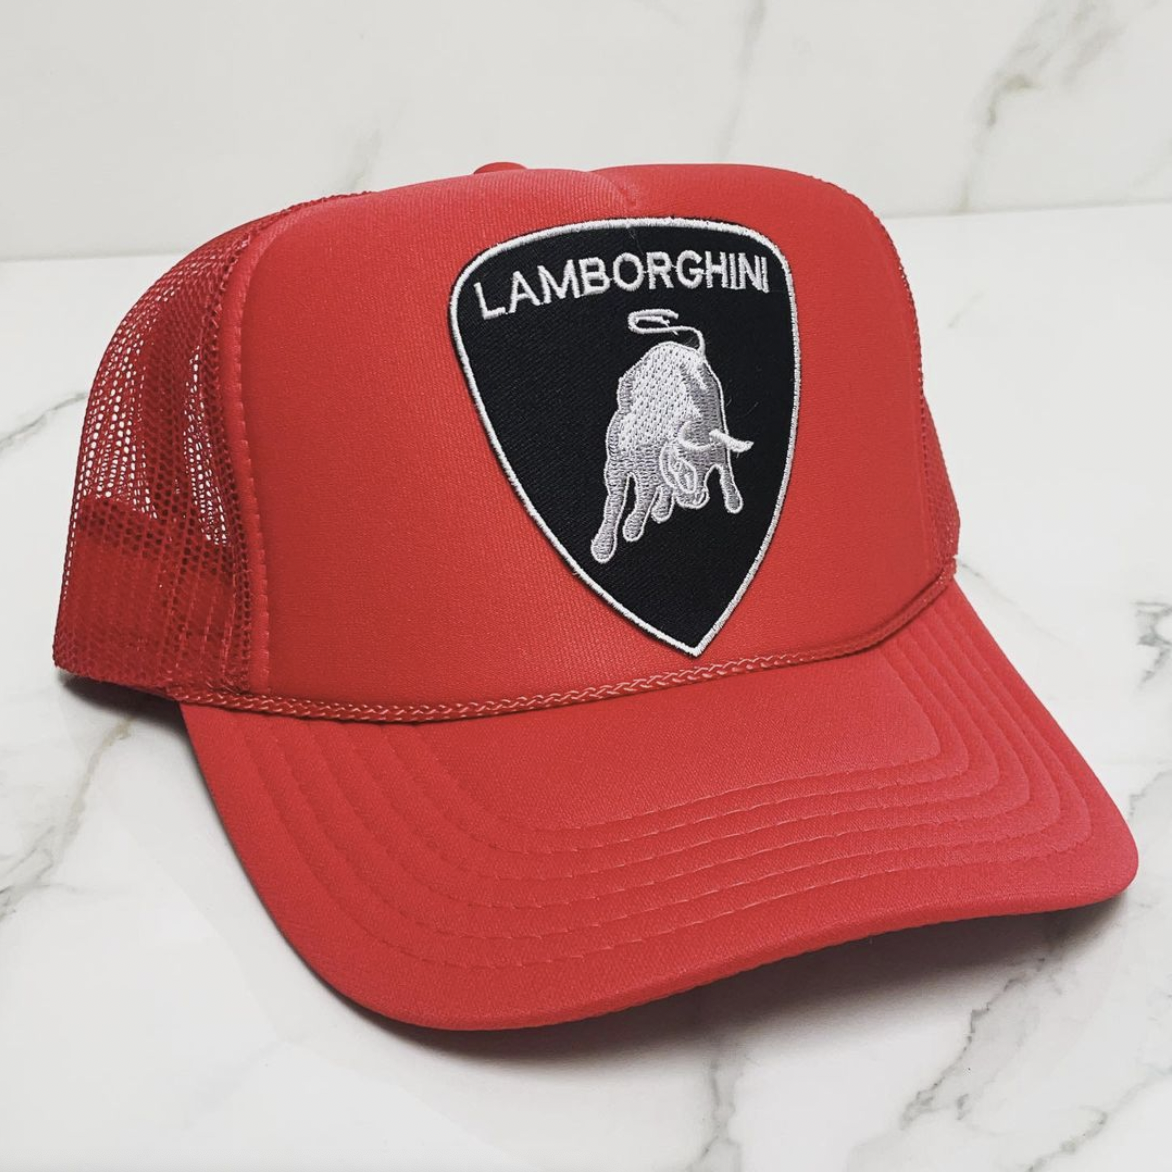 Lamborghini | Custom Handmade Hats & Hoodies